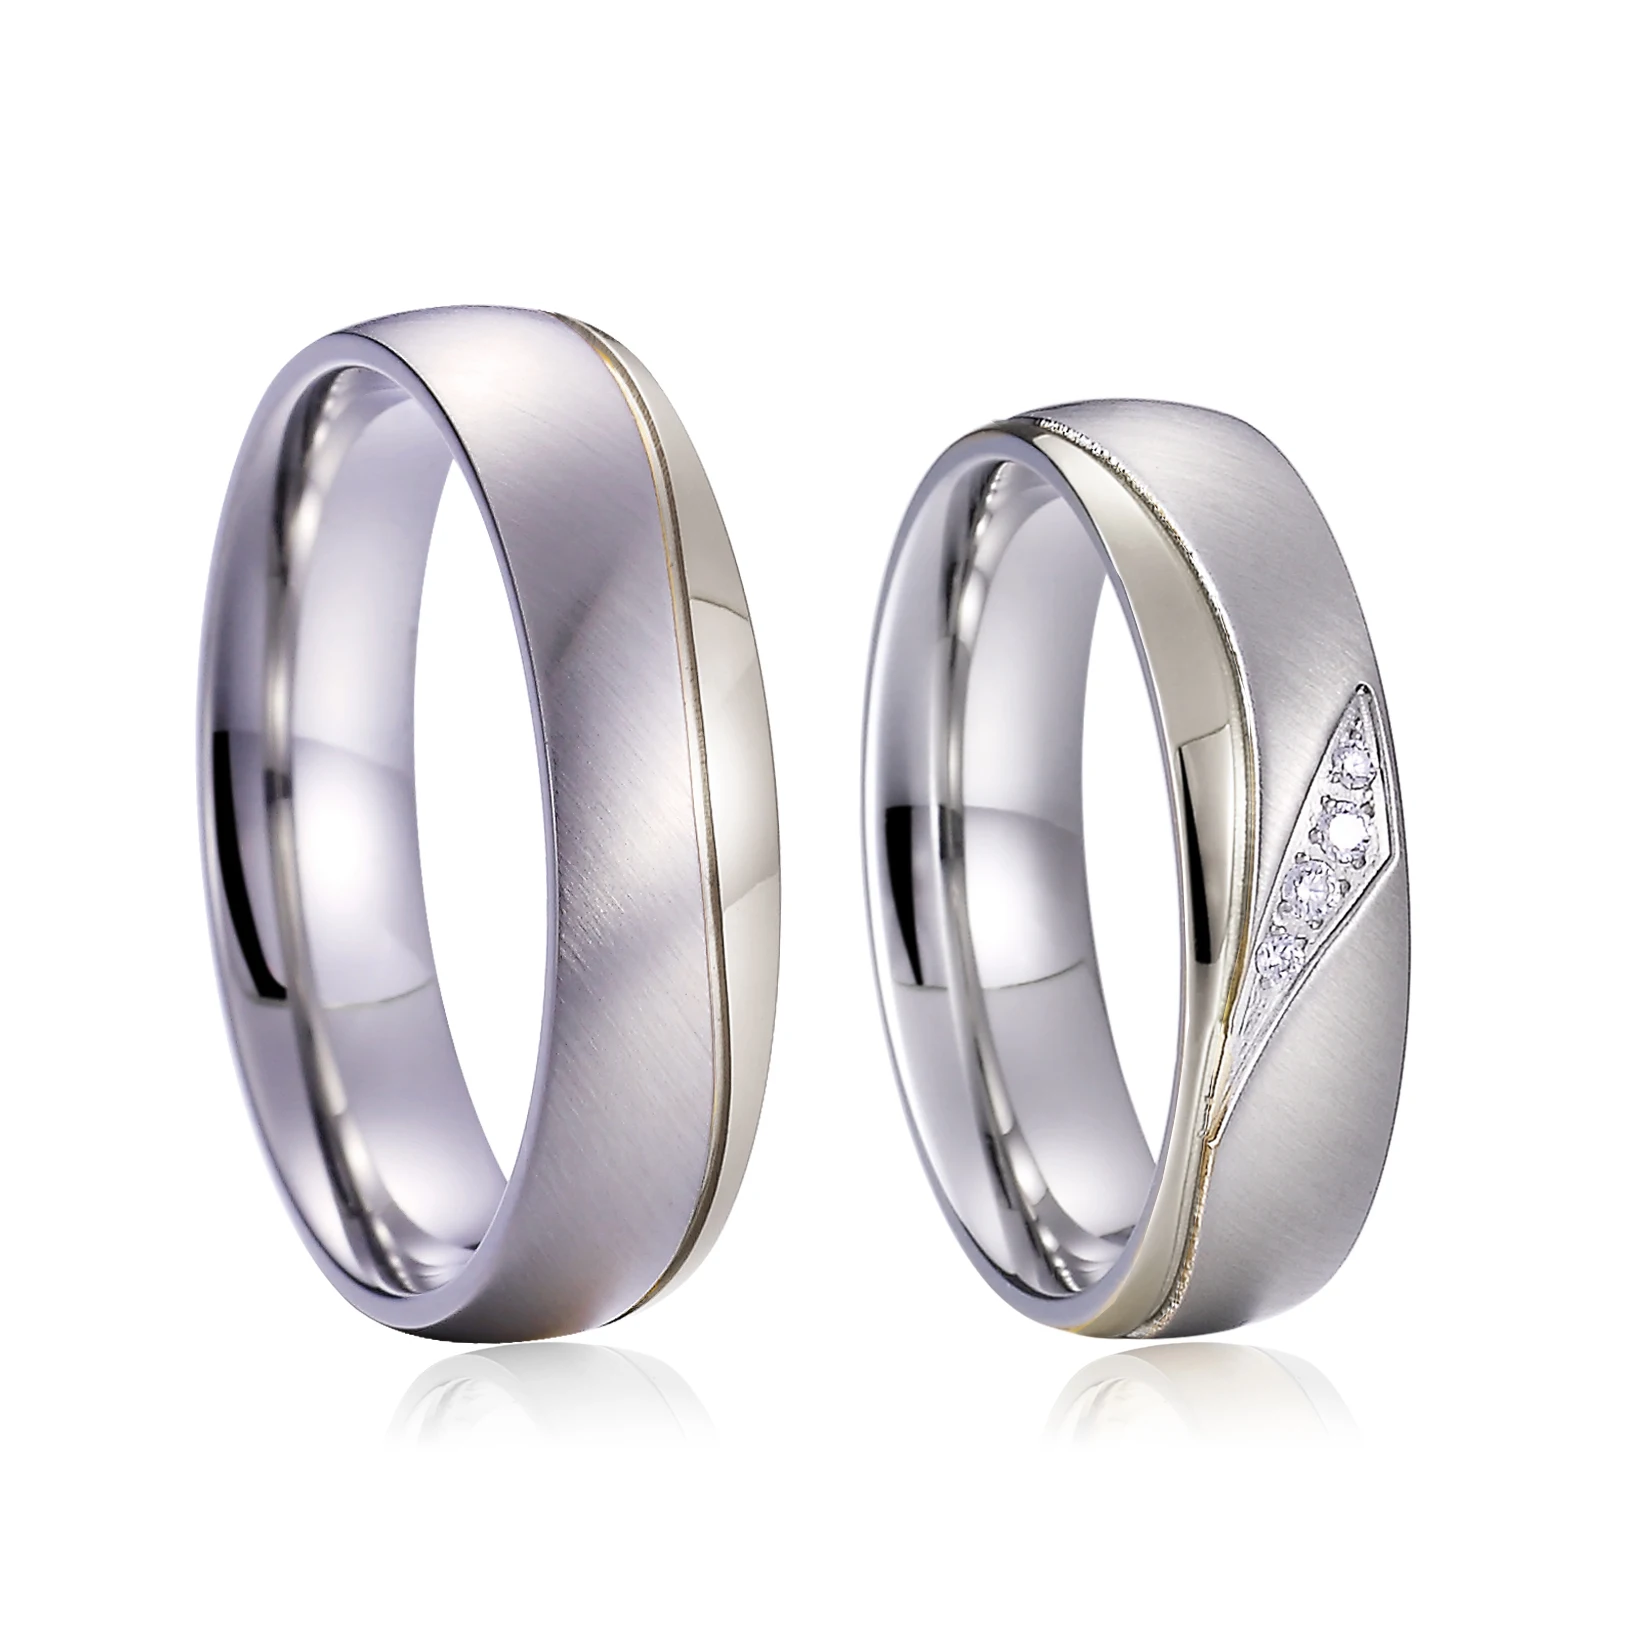 Handmade Vs Mass Produced Wedding Rings & Engagement Rings | J&E